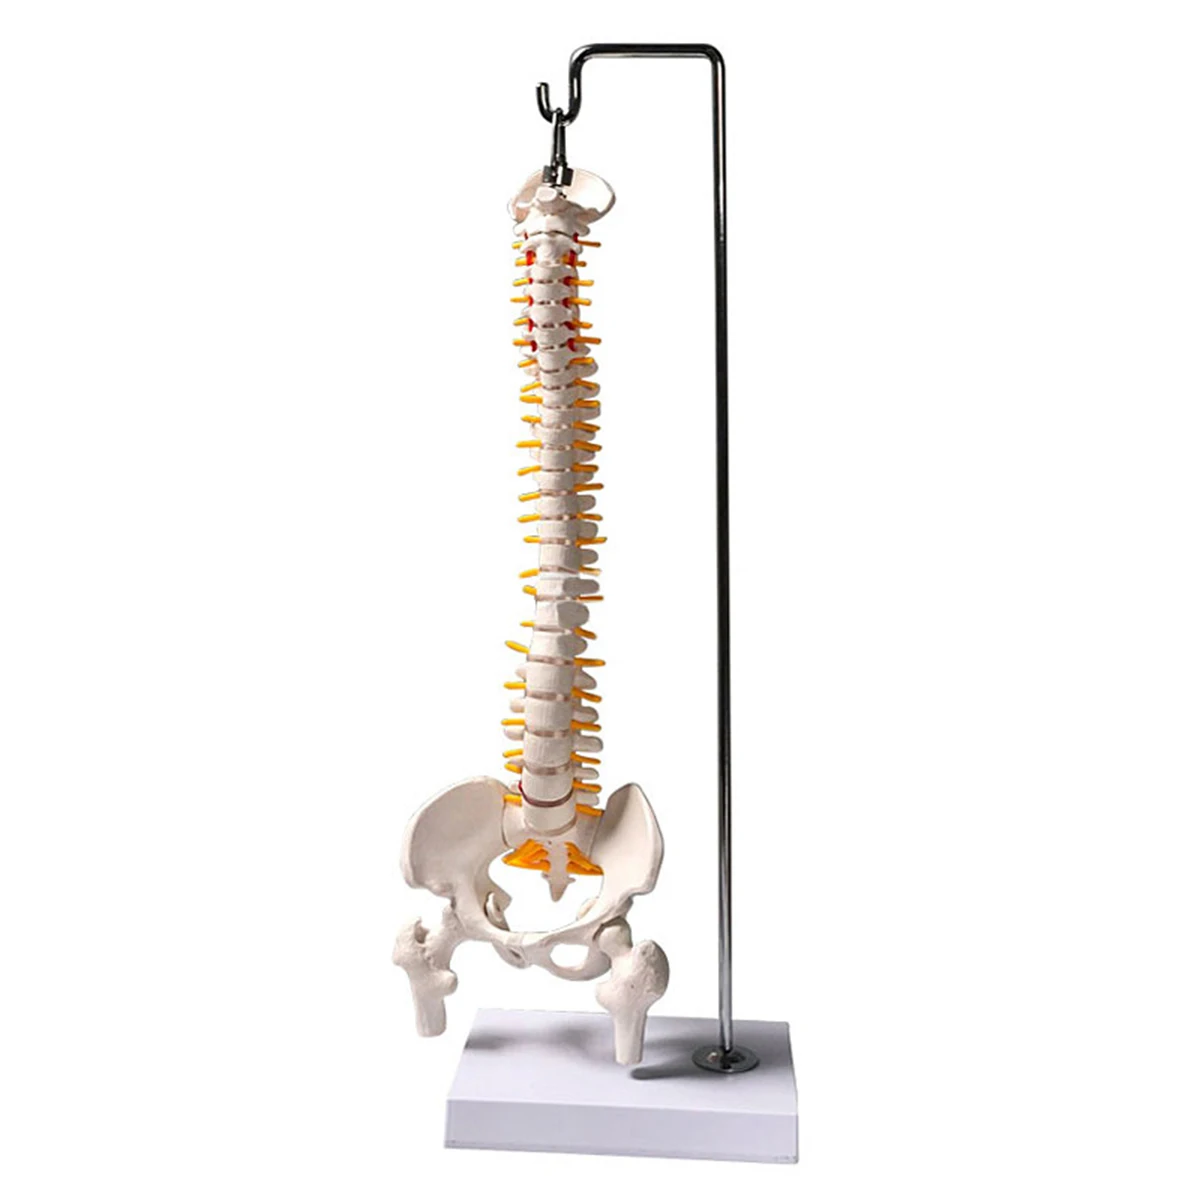 45 см 1/2 в натуральную величину Анатомия человека модель позвоночника тазовые бедра с подставкой образовательная медицинская научная Учебная модель